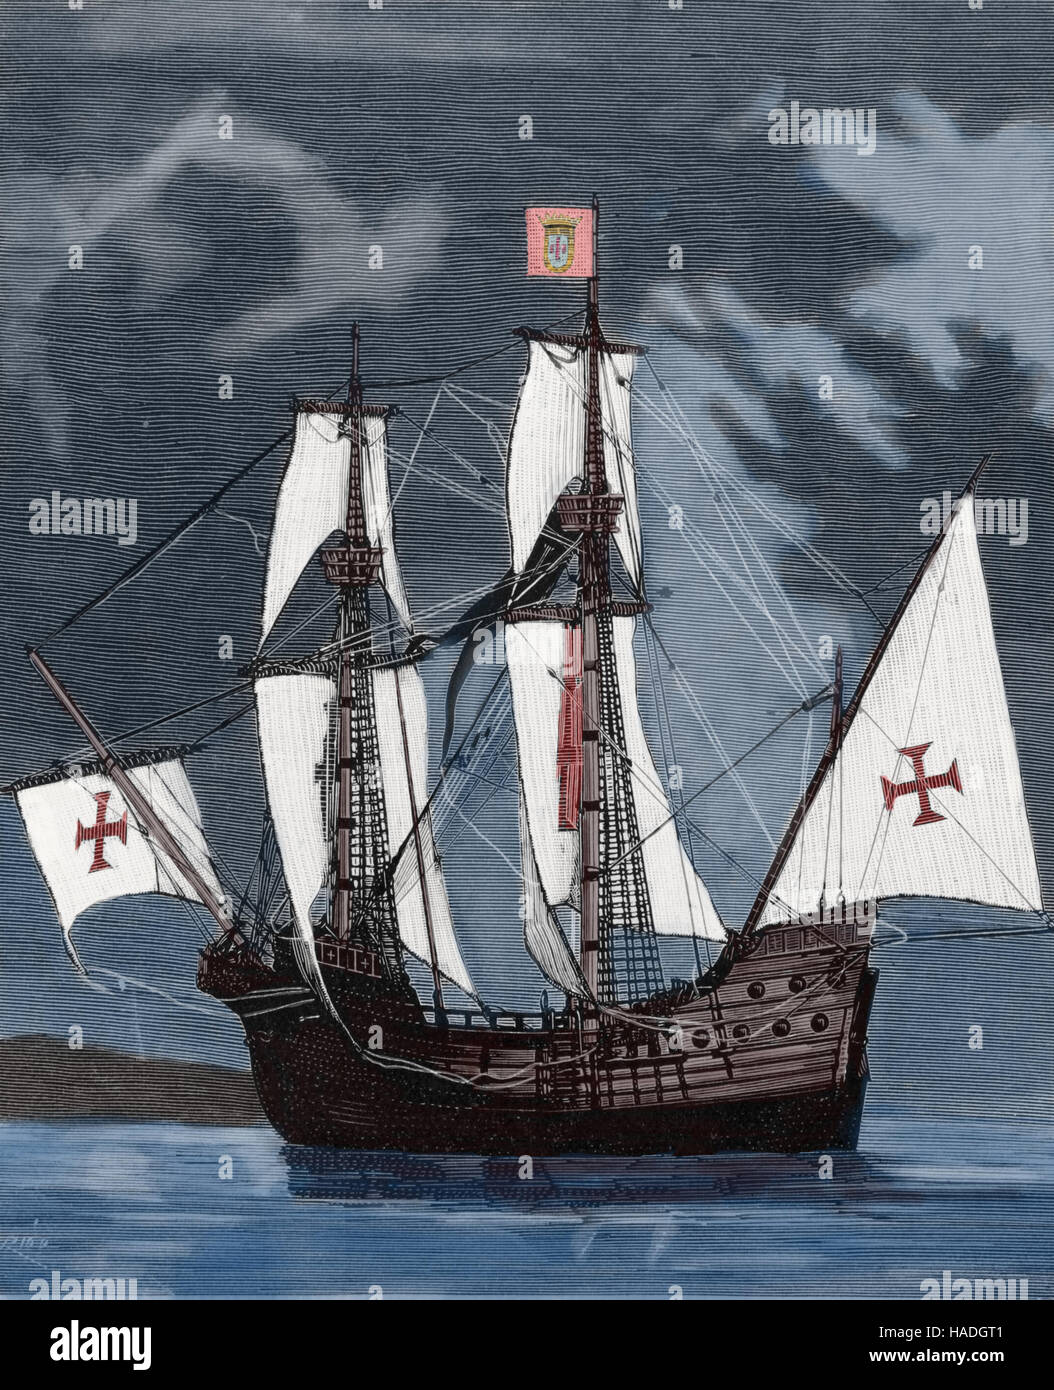 Carrack Santa Maria. Schiff von Christopher Columbus in seiner 1. Reise 1492 verwendet. Kupferstich, 19. Jahrhundert, Farbe. Stockfoto